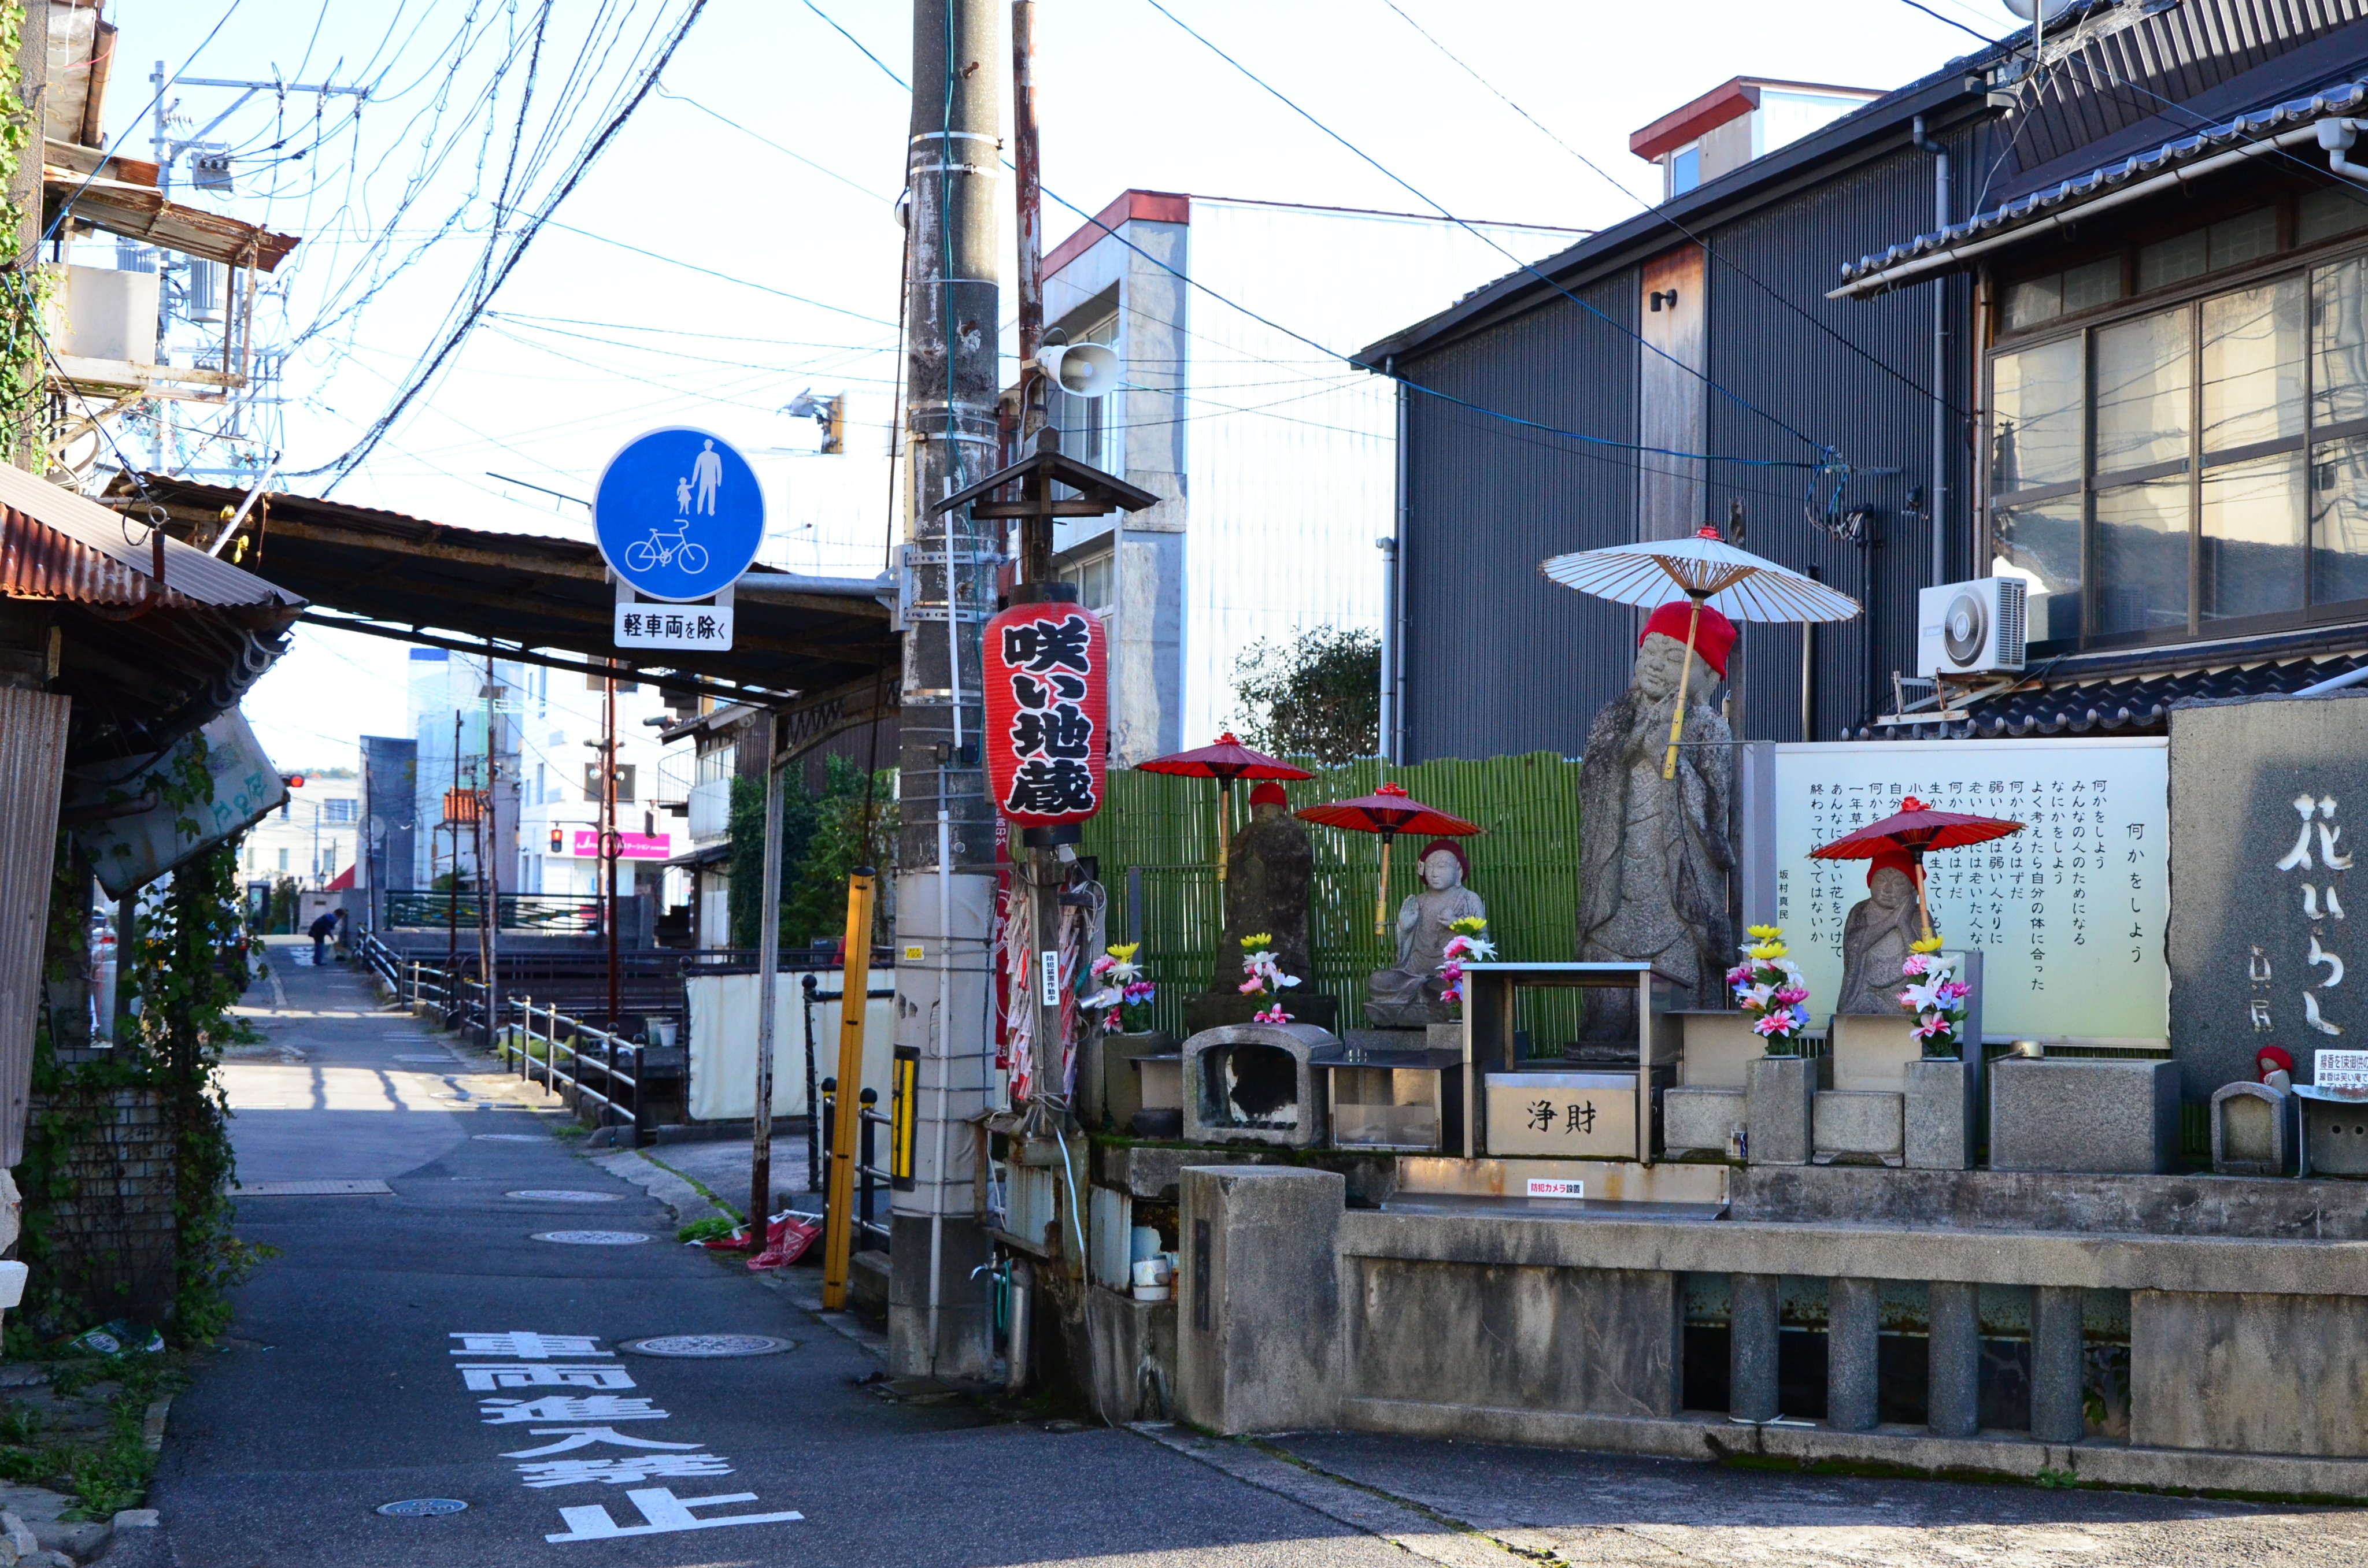 鳥取県観光連盟 とっとり旅 公式 米子市街地を流れる小さな川 旧加茂川沿いを中心に地蔵さん巡りの風習が古くから伝わっています それぞれに違ったご利益 表情がある26尊のお地蔵さんを巡りながら 小路と古い家並みが多く残る米子のまちを散策